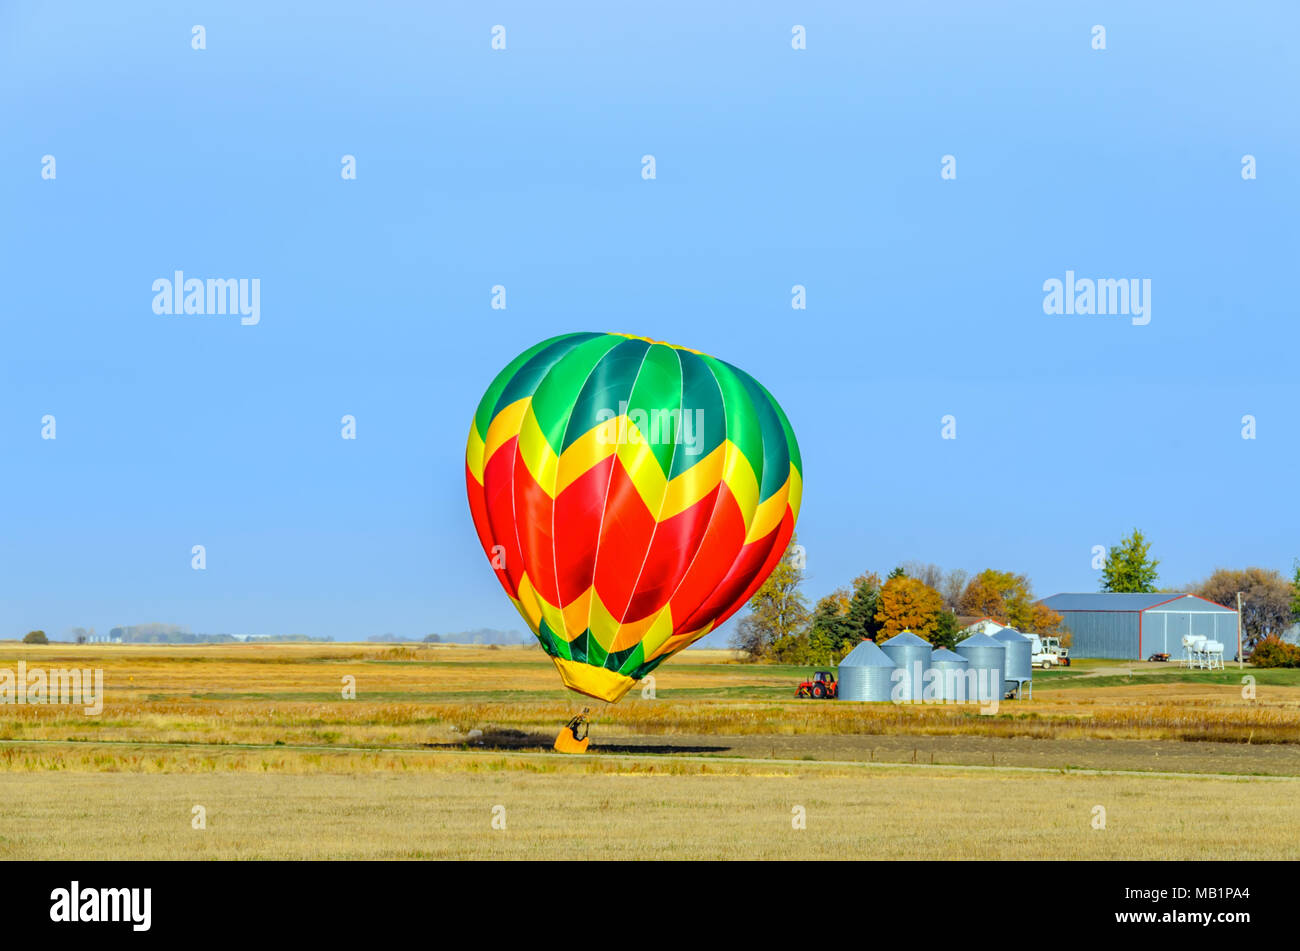 Eine mehrfarbige Ballon mit einem Korb, eine Flamme von Feuer und die Silhouette eines Pilot fliegt in den blauen Himmel über einem gelben Feld an einem Sommertag, ein tra Stockfoto